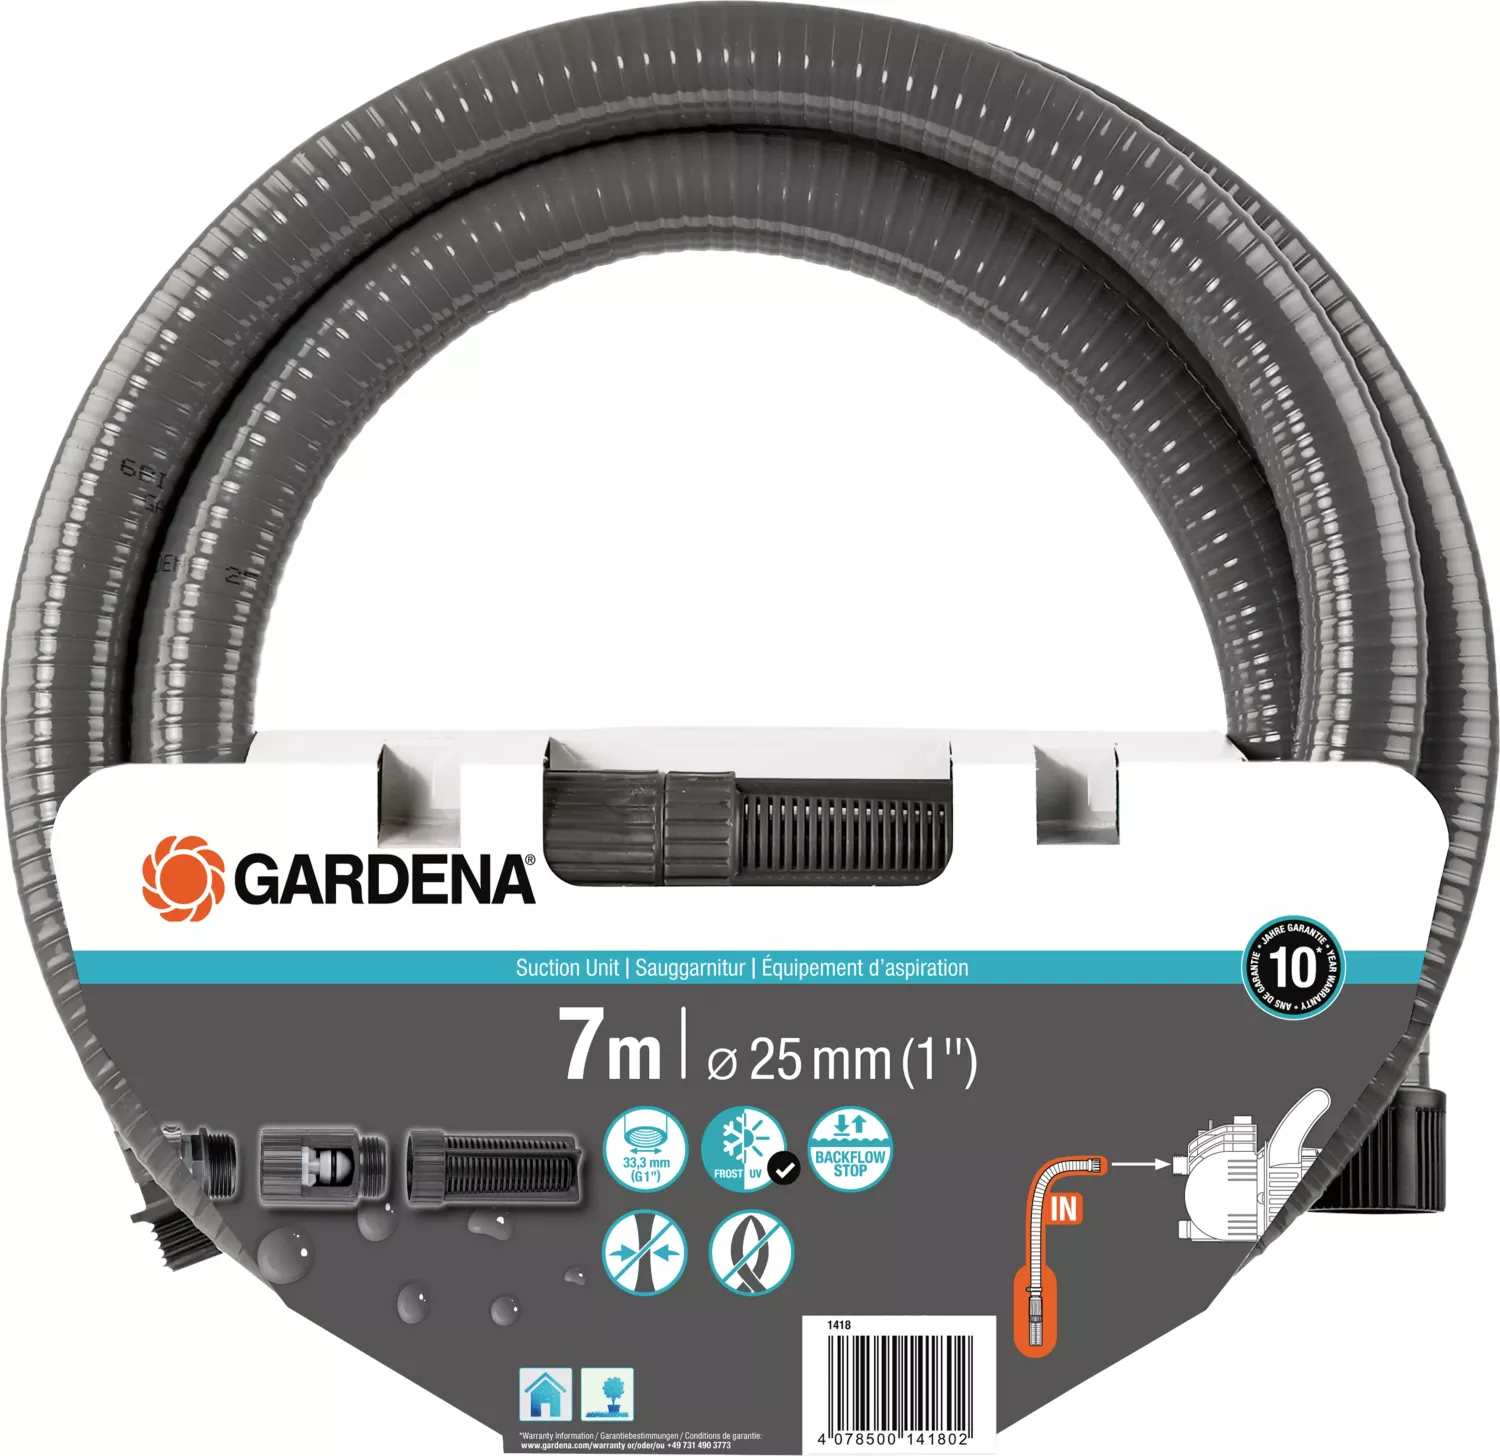 Gardena 5600 Silent+ - Elektrische Pumpe im Angebot